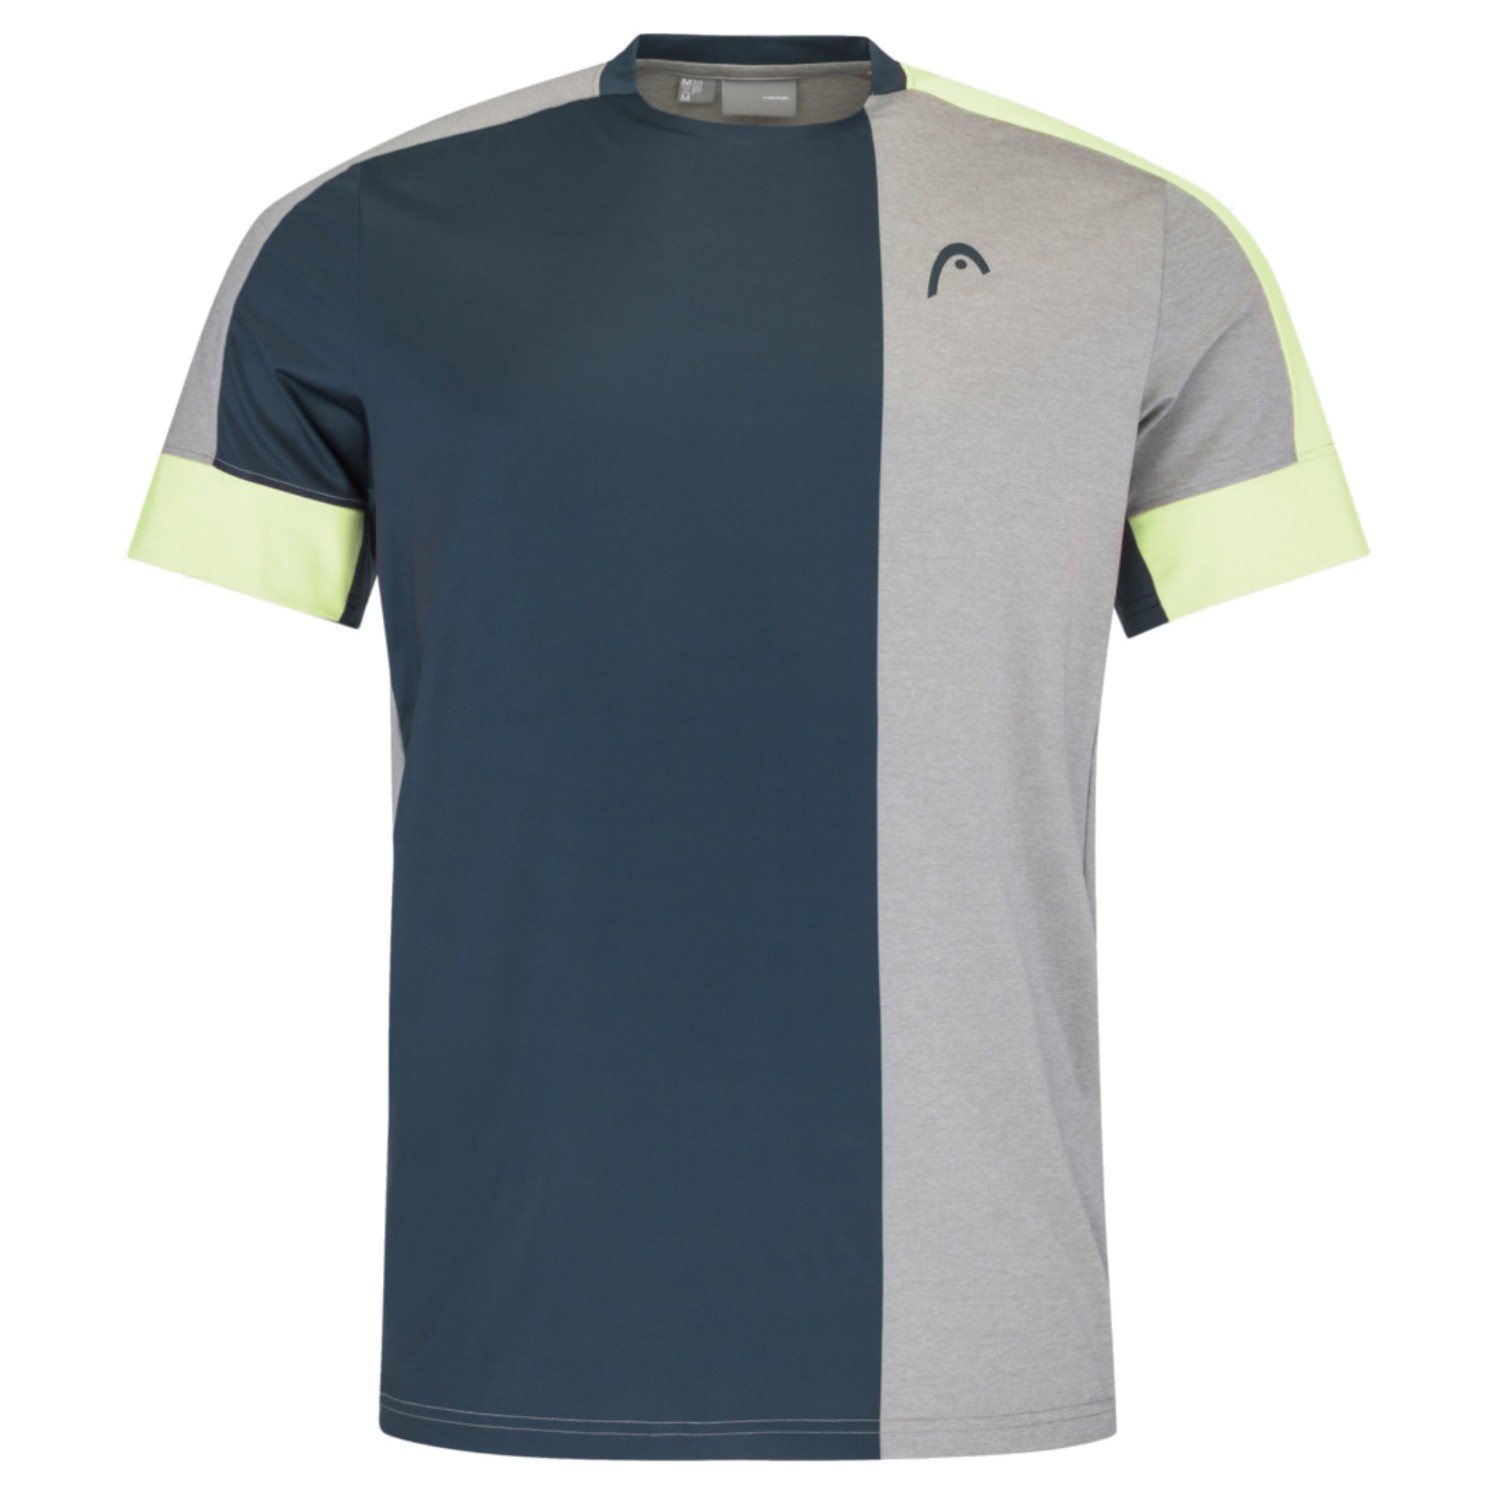 Head Play Tech T-Shirt Grey/Lime